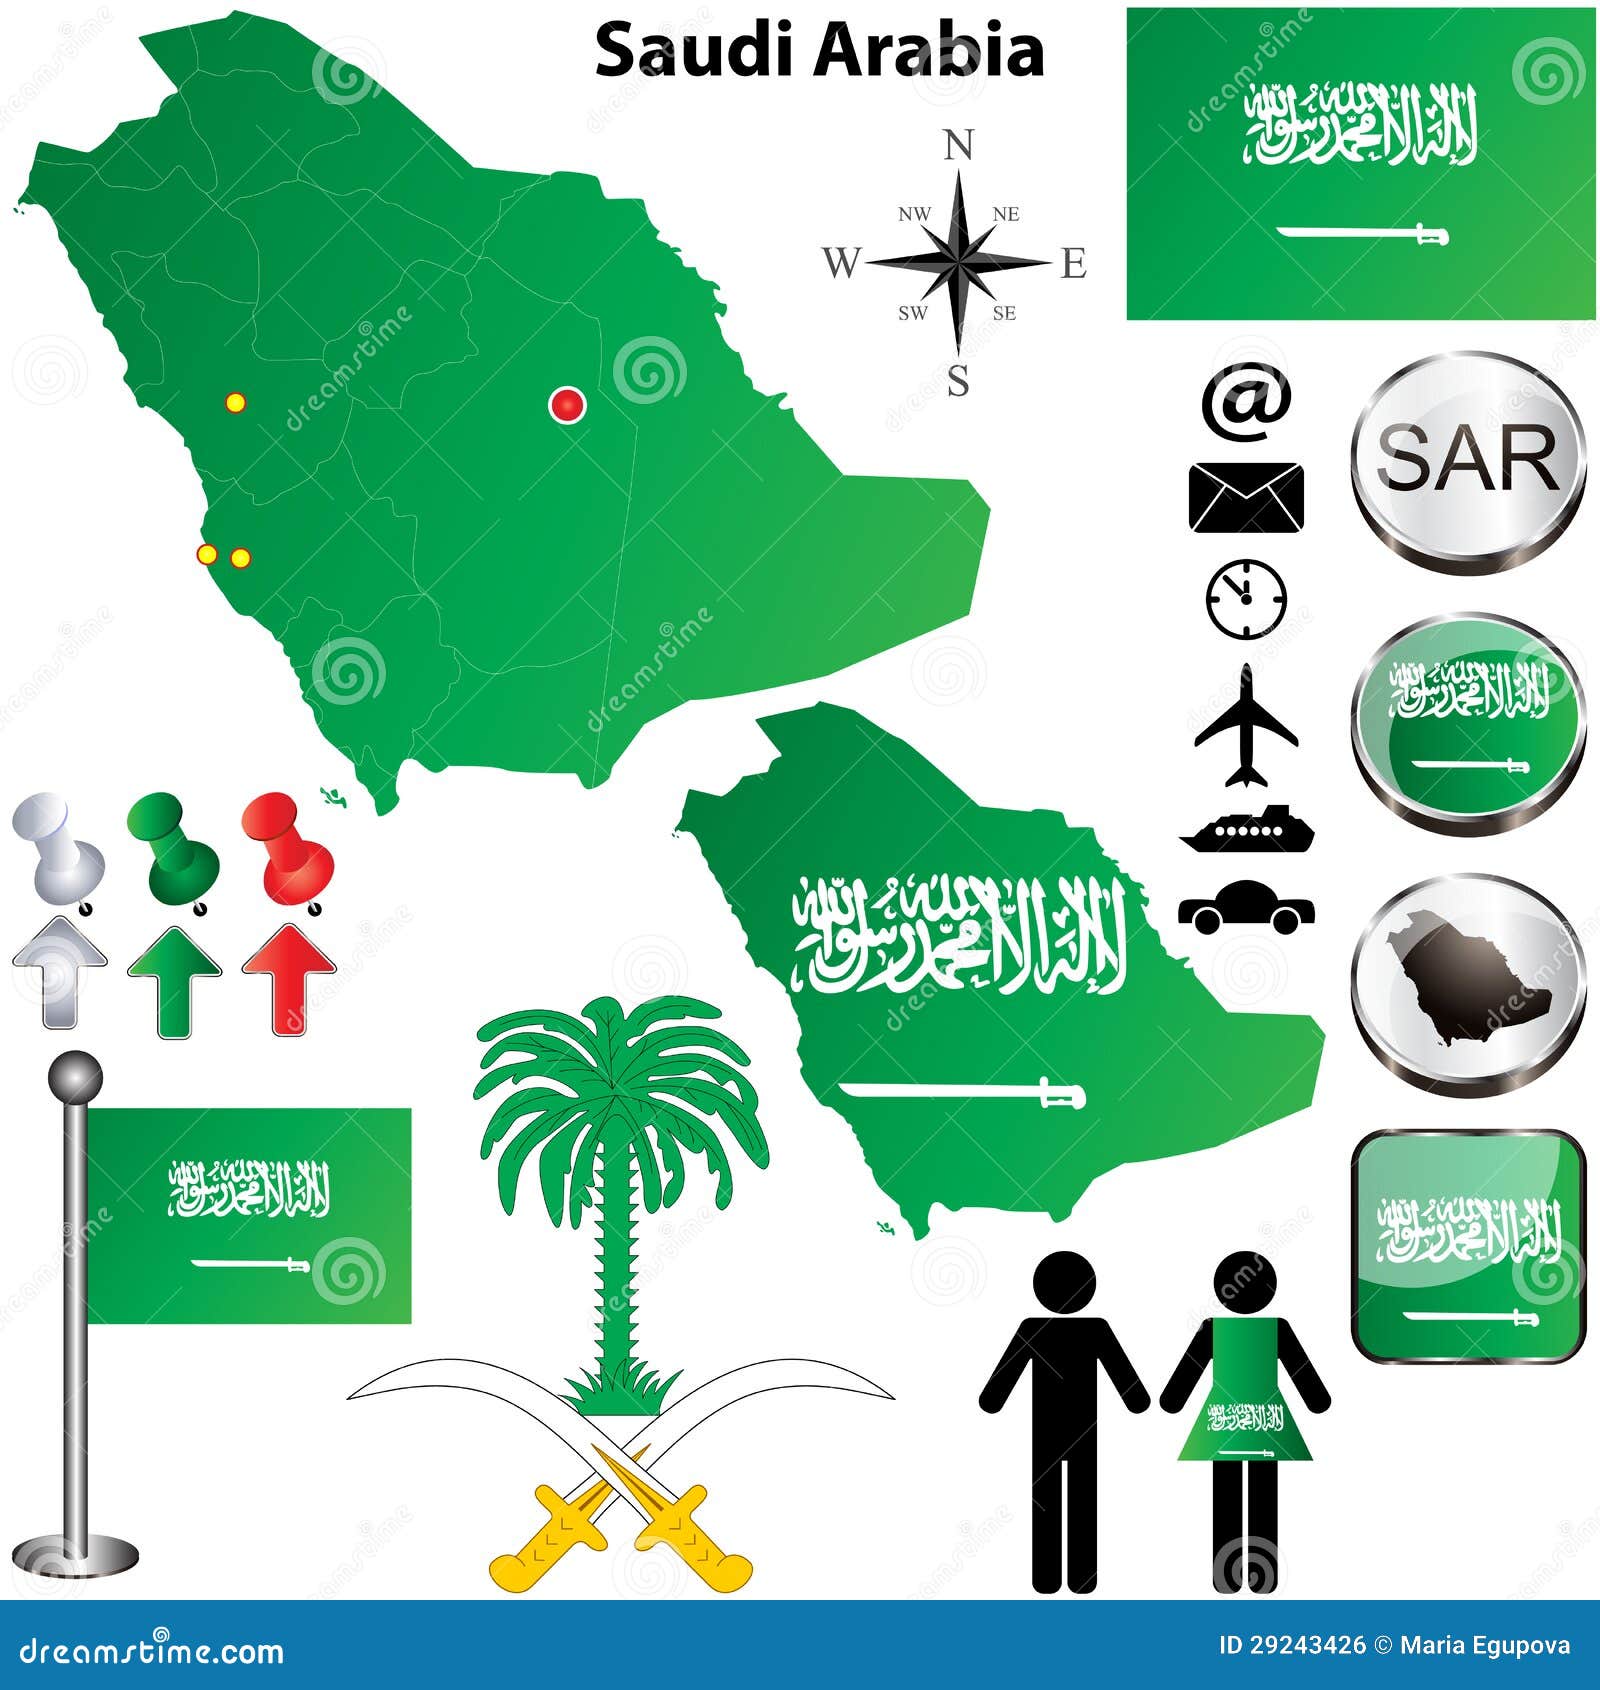 沙特阿拉伯映射. 沙特阿拉伯集向量与详细国家（地区）形状的与区域边界、标志和图标